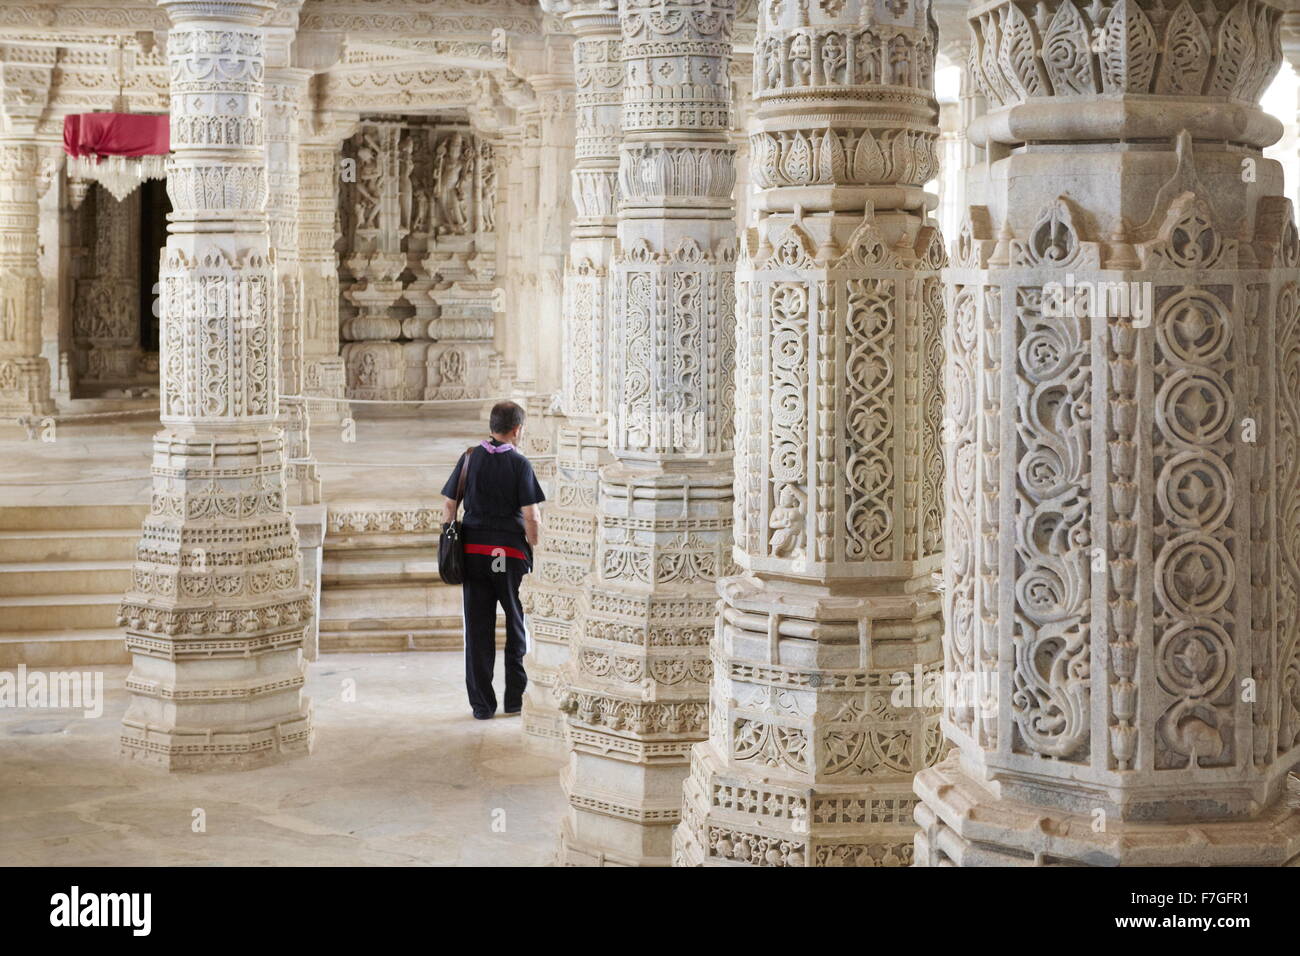 Piliers de marbre blanc sculpté dans le temple de Jain de Ranakpur, Rajasthan, Inde Banque D'Images